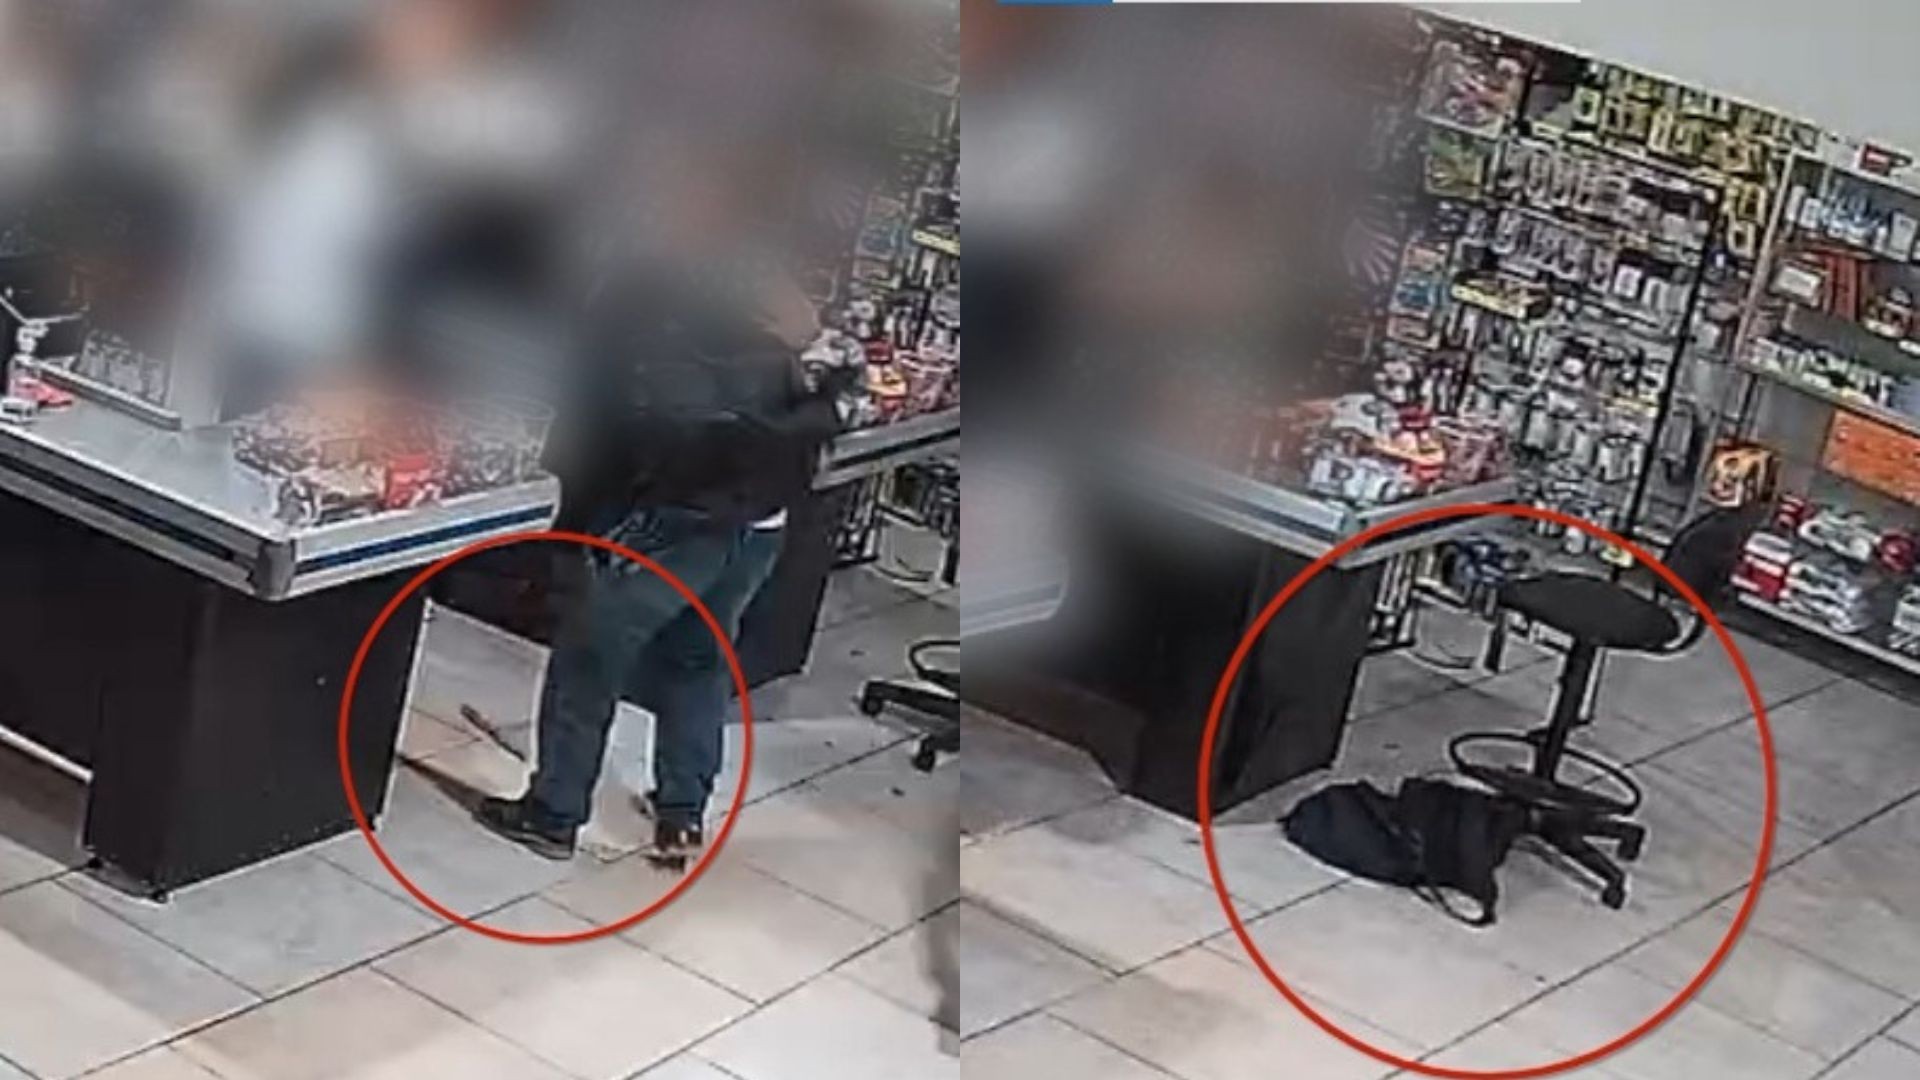 Antes de deixar dinheiro voar, ladrão atrapalhado derrubou arma do crime e mochila durante roubo; veja vídeo